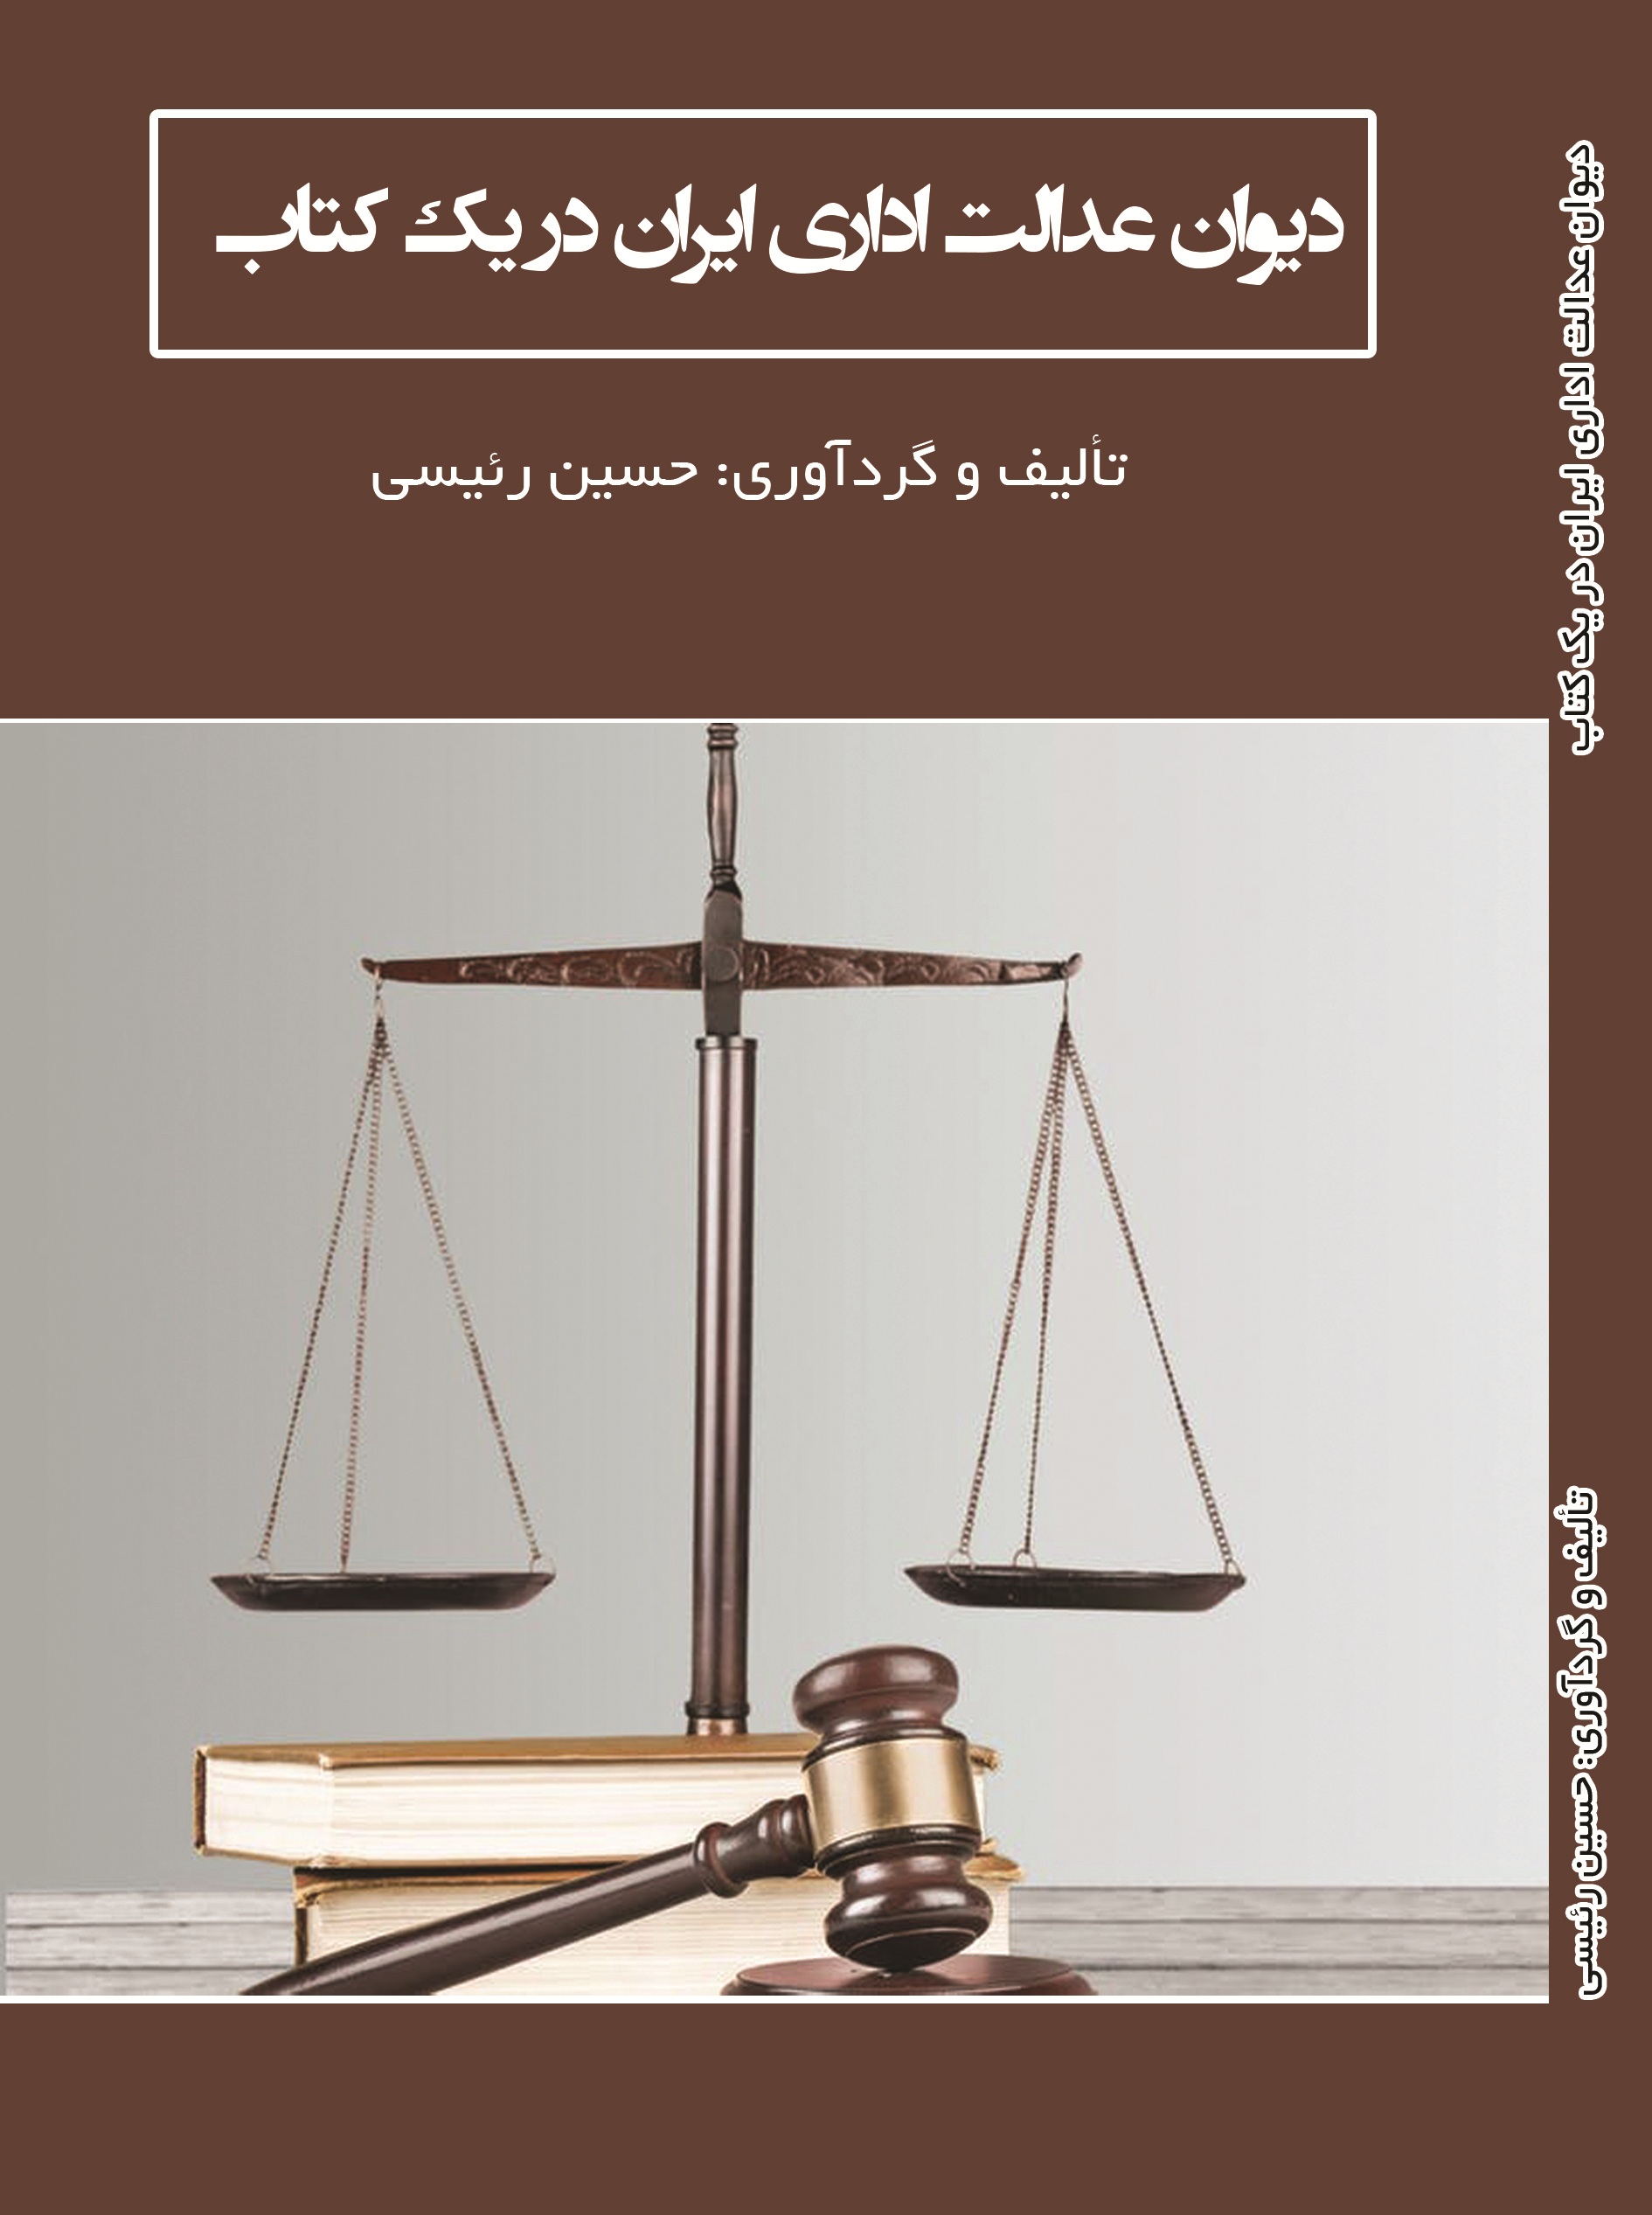 دیوان عدالت اداری ایران در یک کتاب